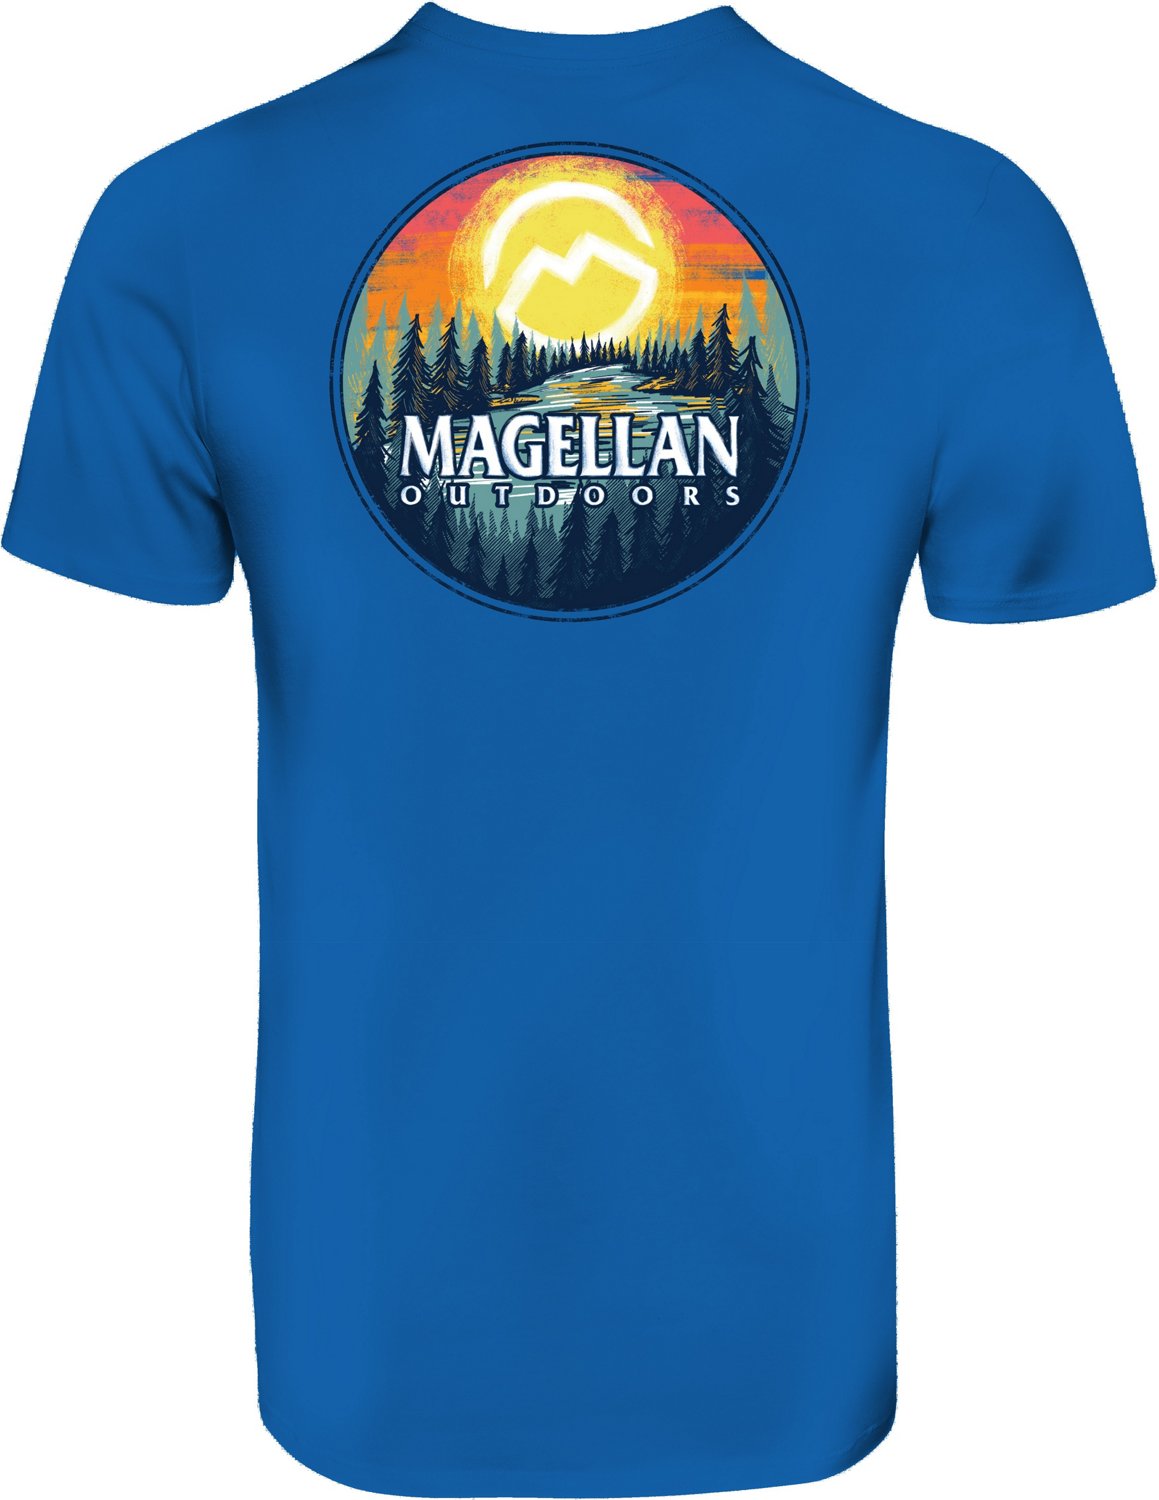 Academy Sports + Outdoors Magellan Outdoors Men's Rising Short Sleeve Shirt